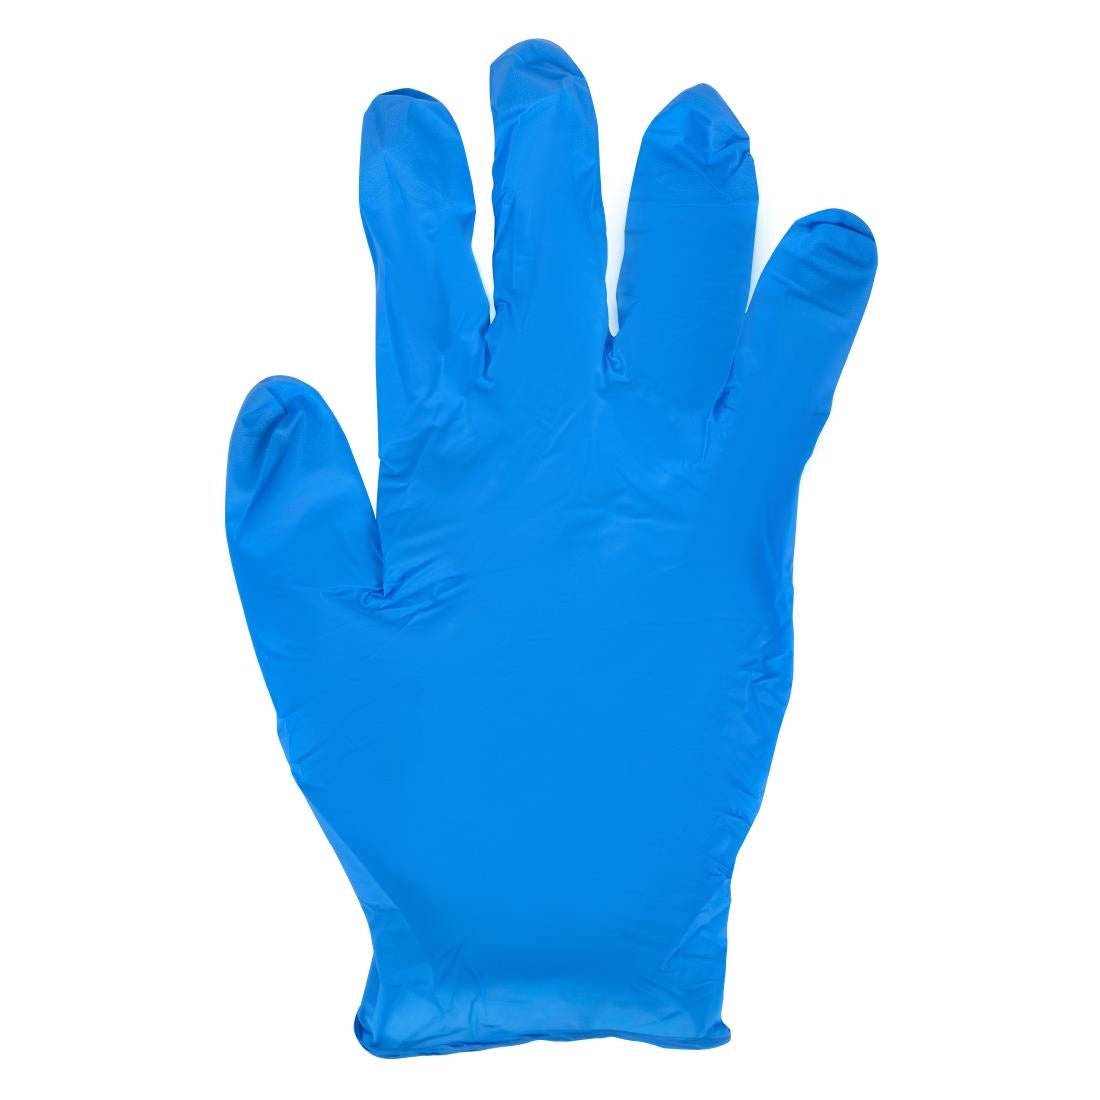 Y478-XL Powder-Free Nitrile Gloves XL (Pack of 100)